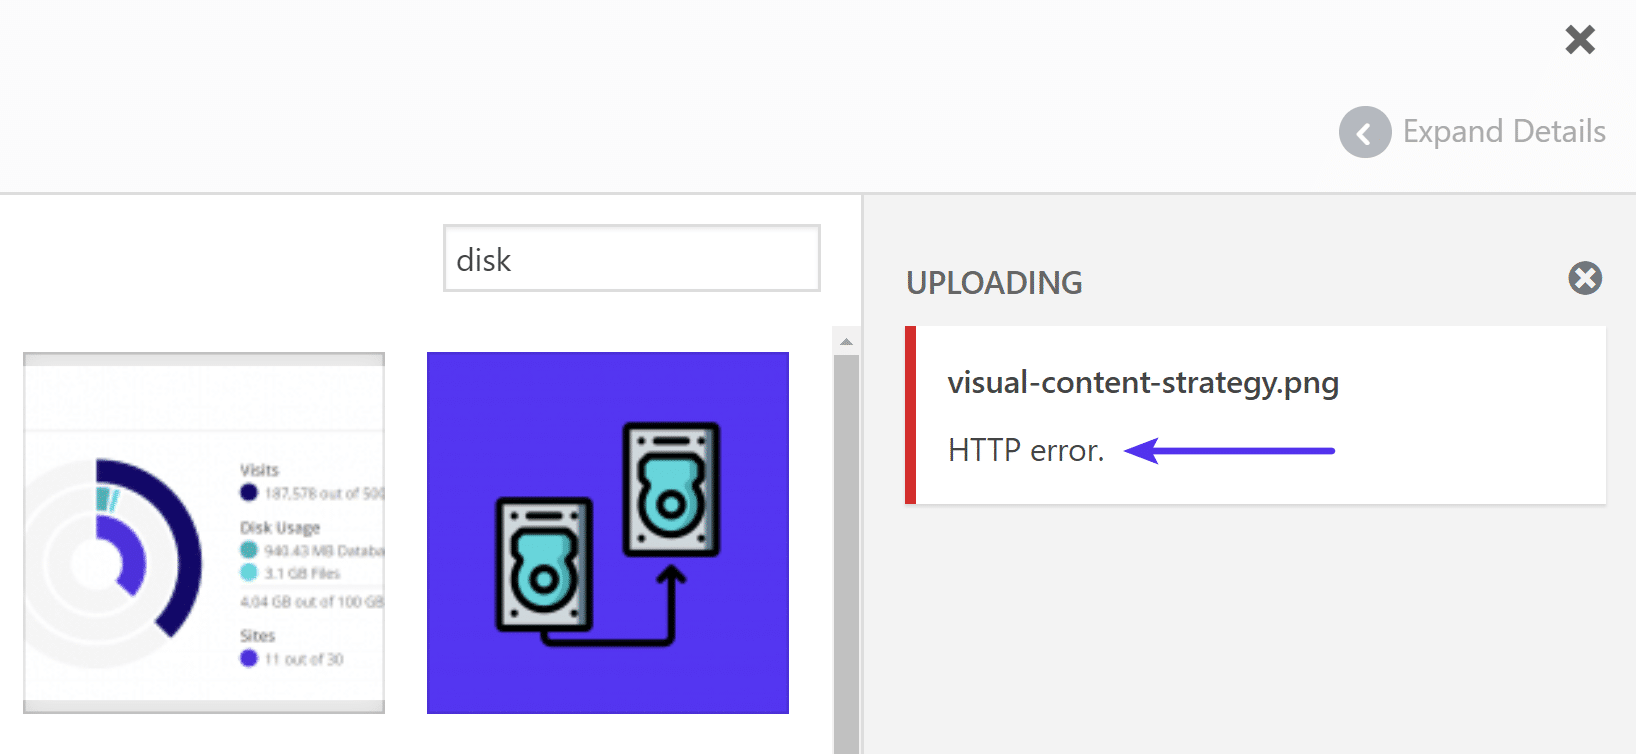 WordPress HTTP error when uploading images